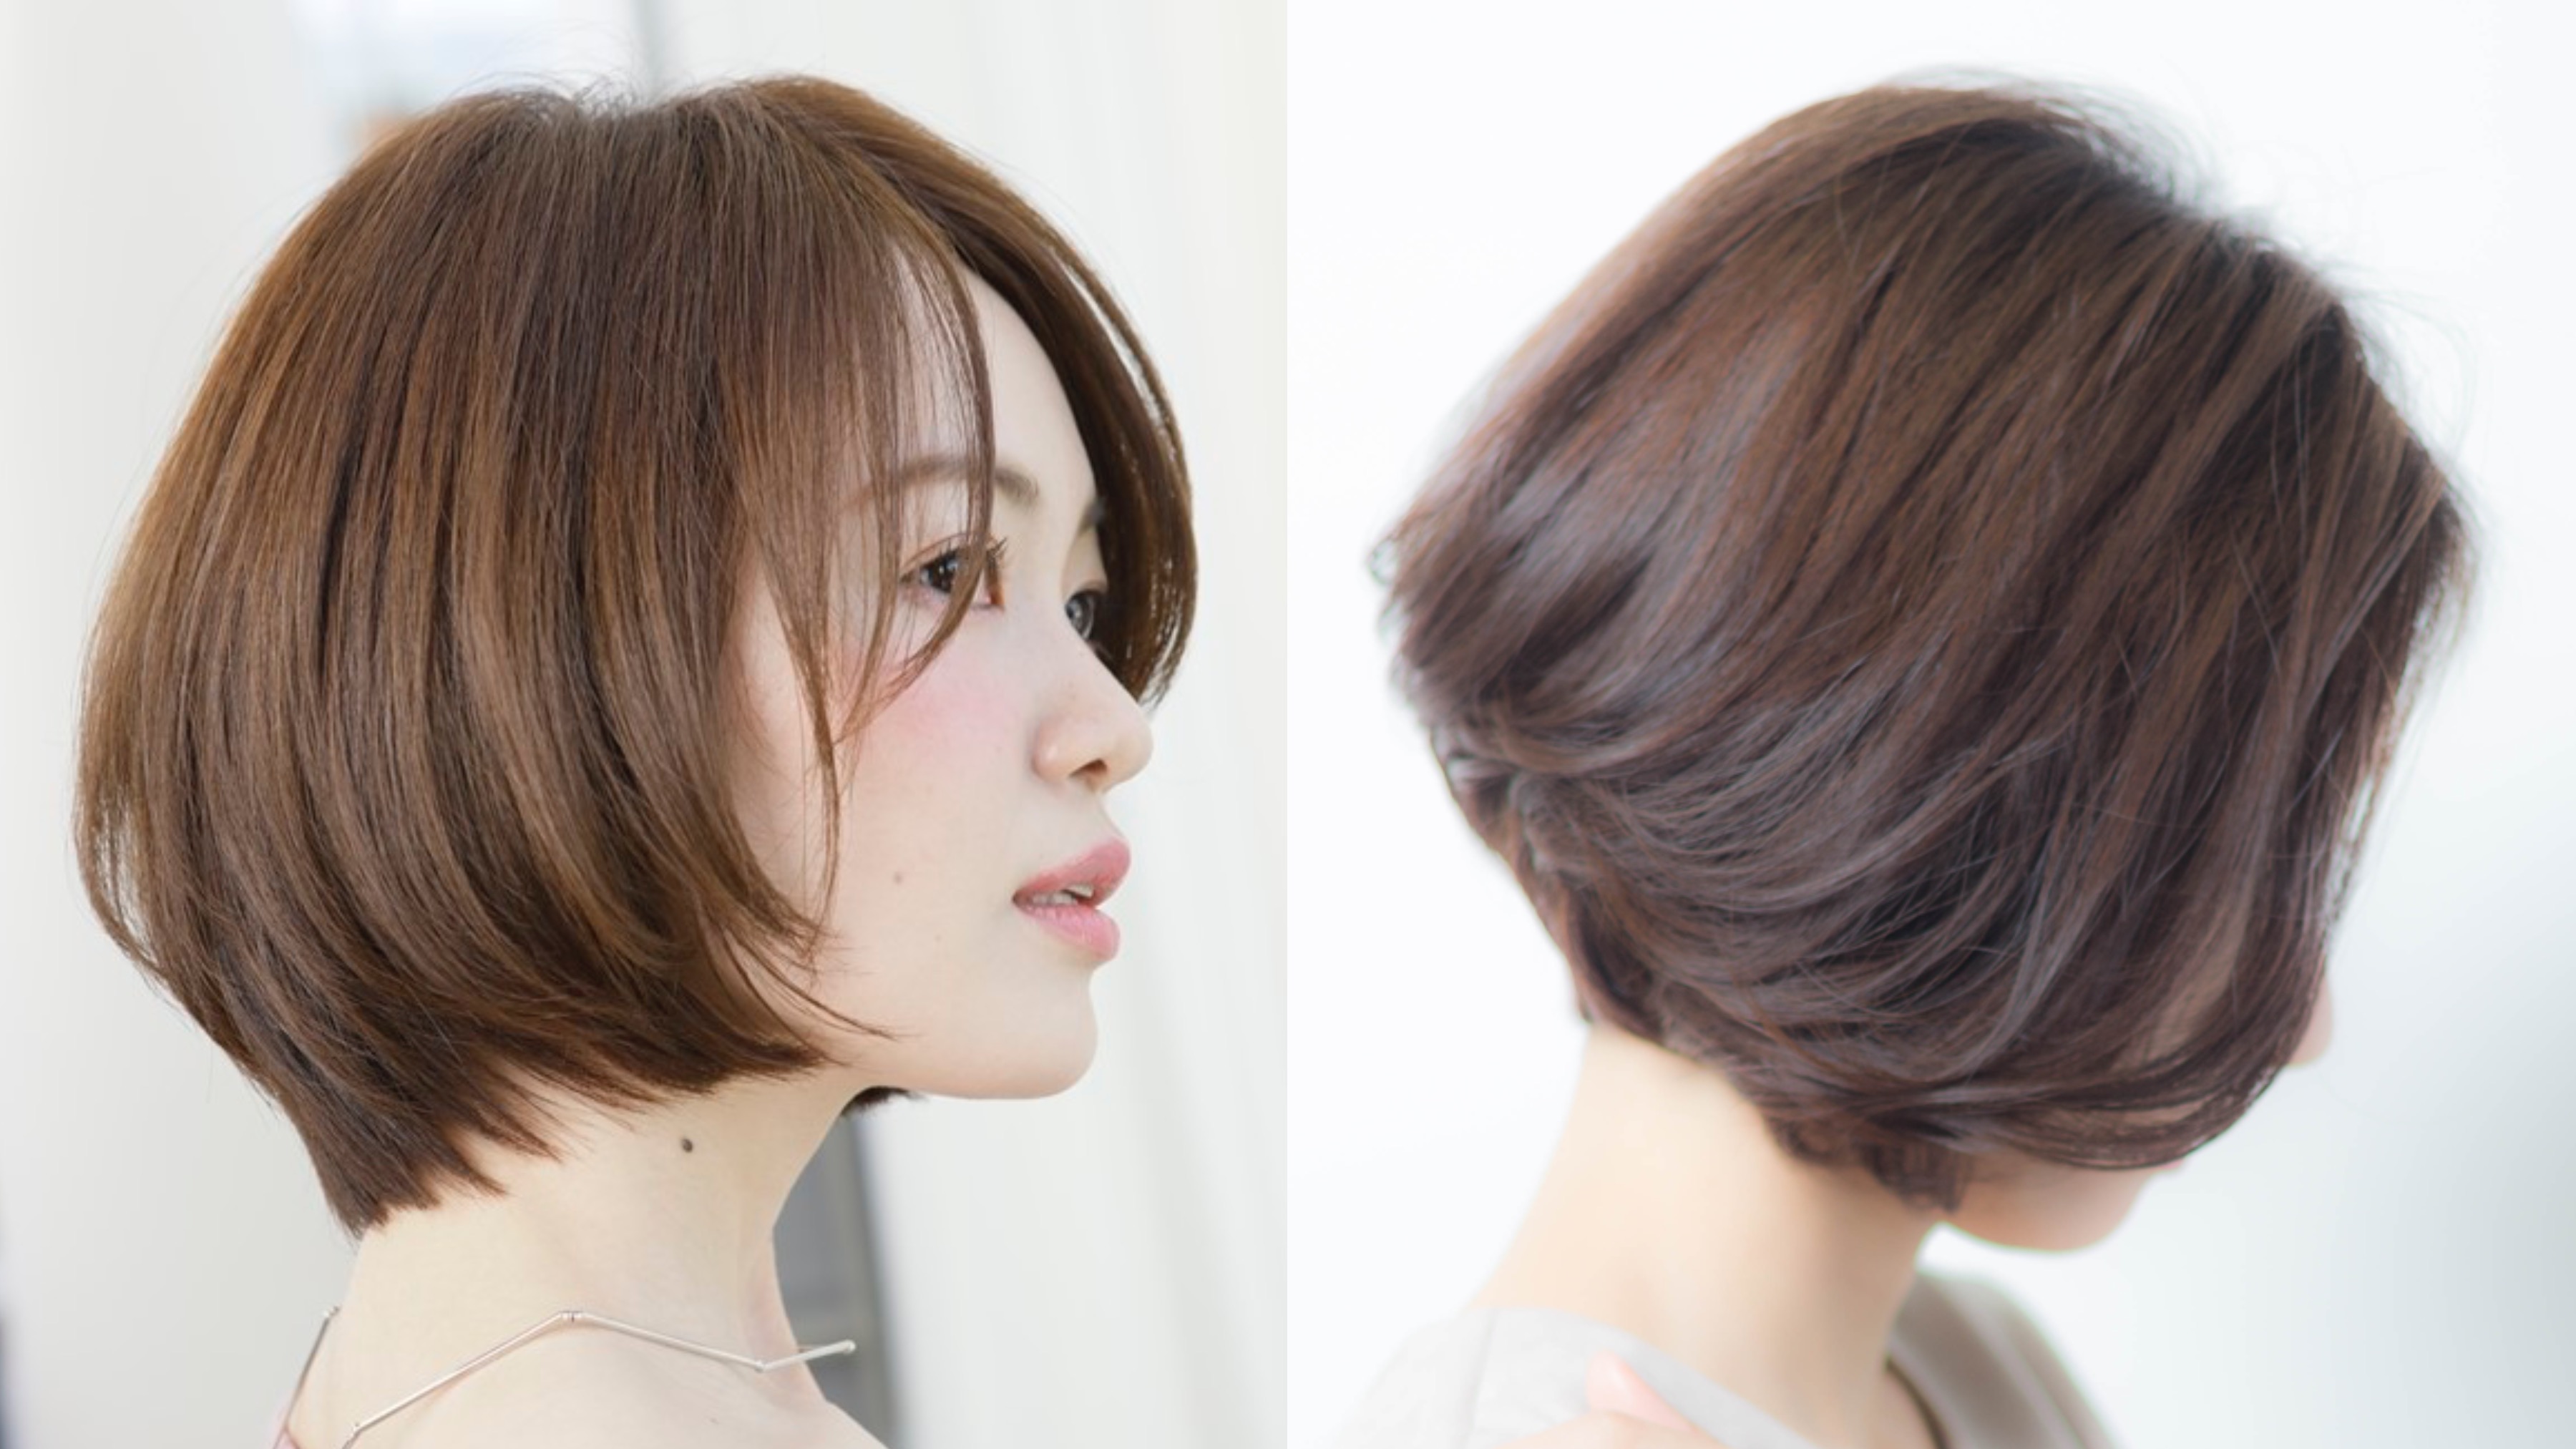 21年夏 40代の髪型のお悩みを 素敵に生かすボブのヘアカタログ 似合わせカットが上手い東京の美容師 美容室minx銀座 蛭田のブログ